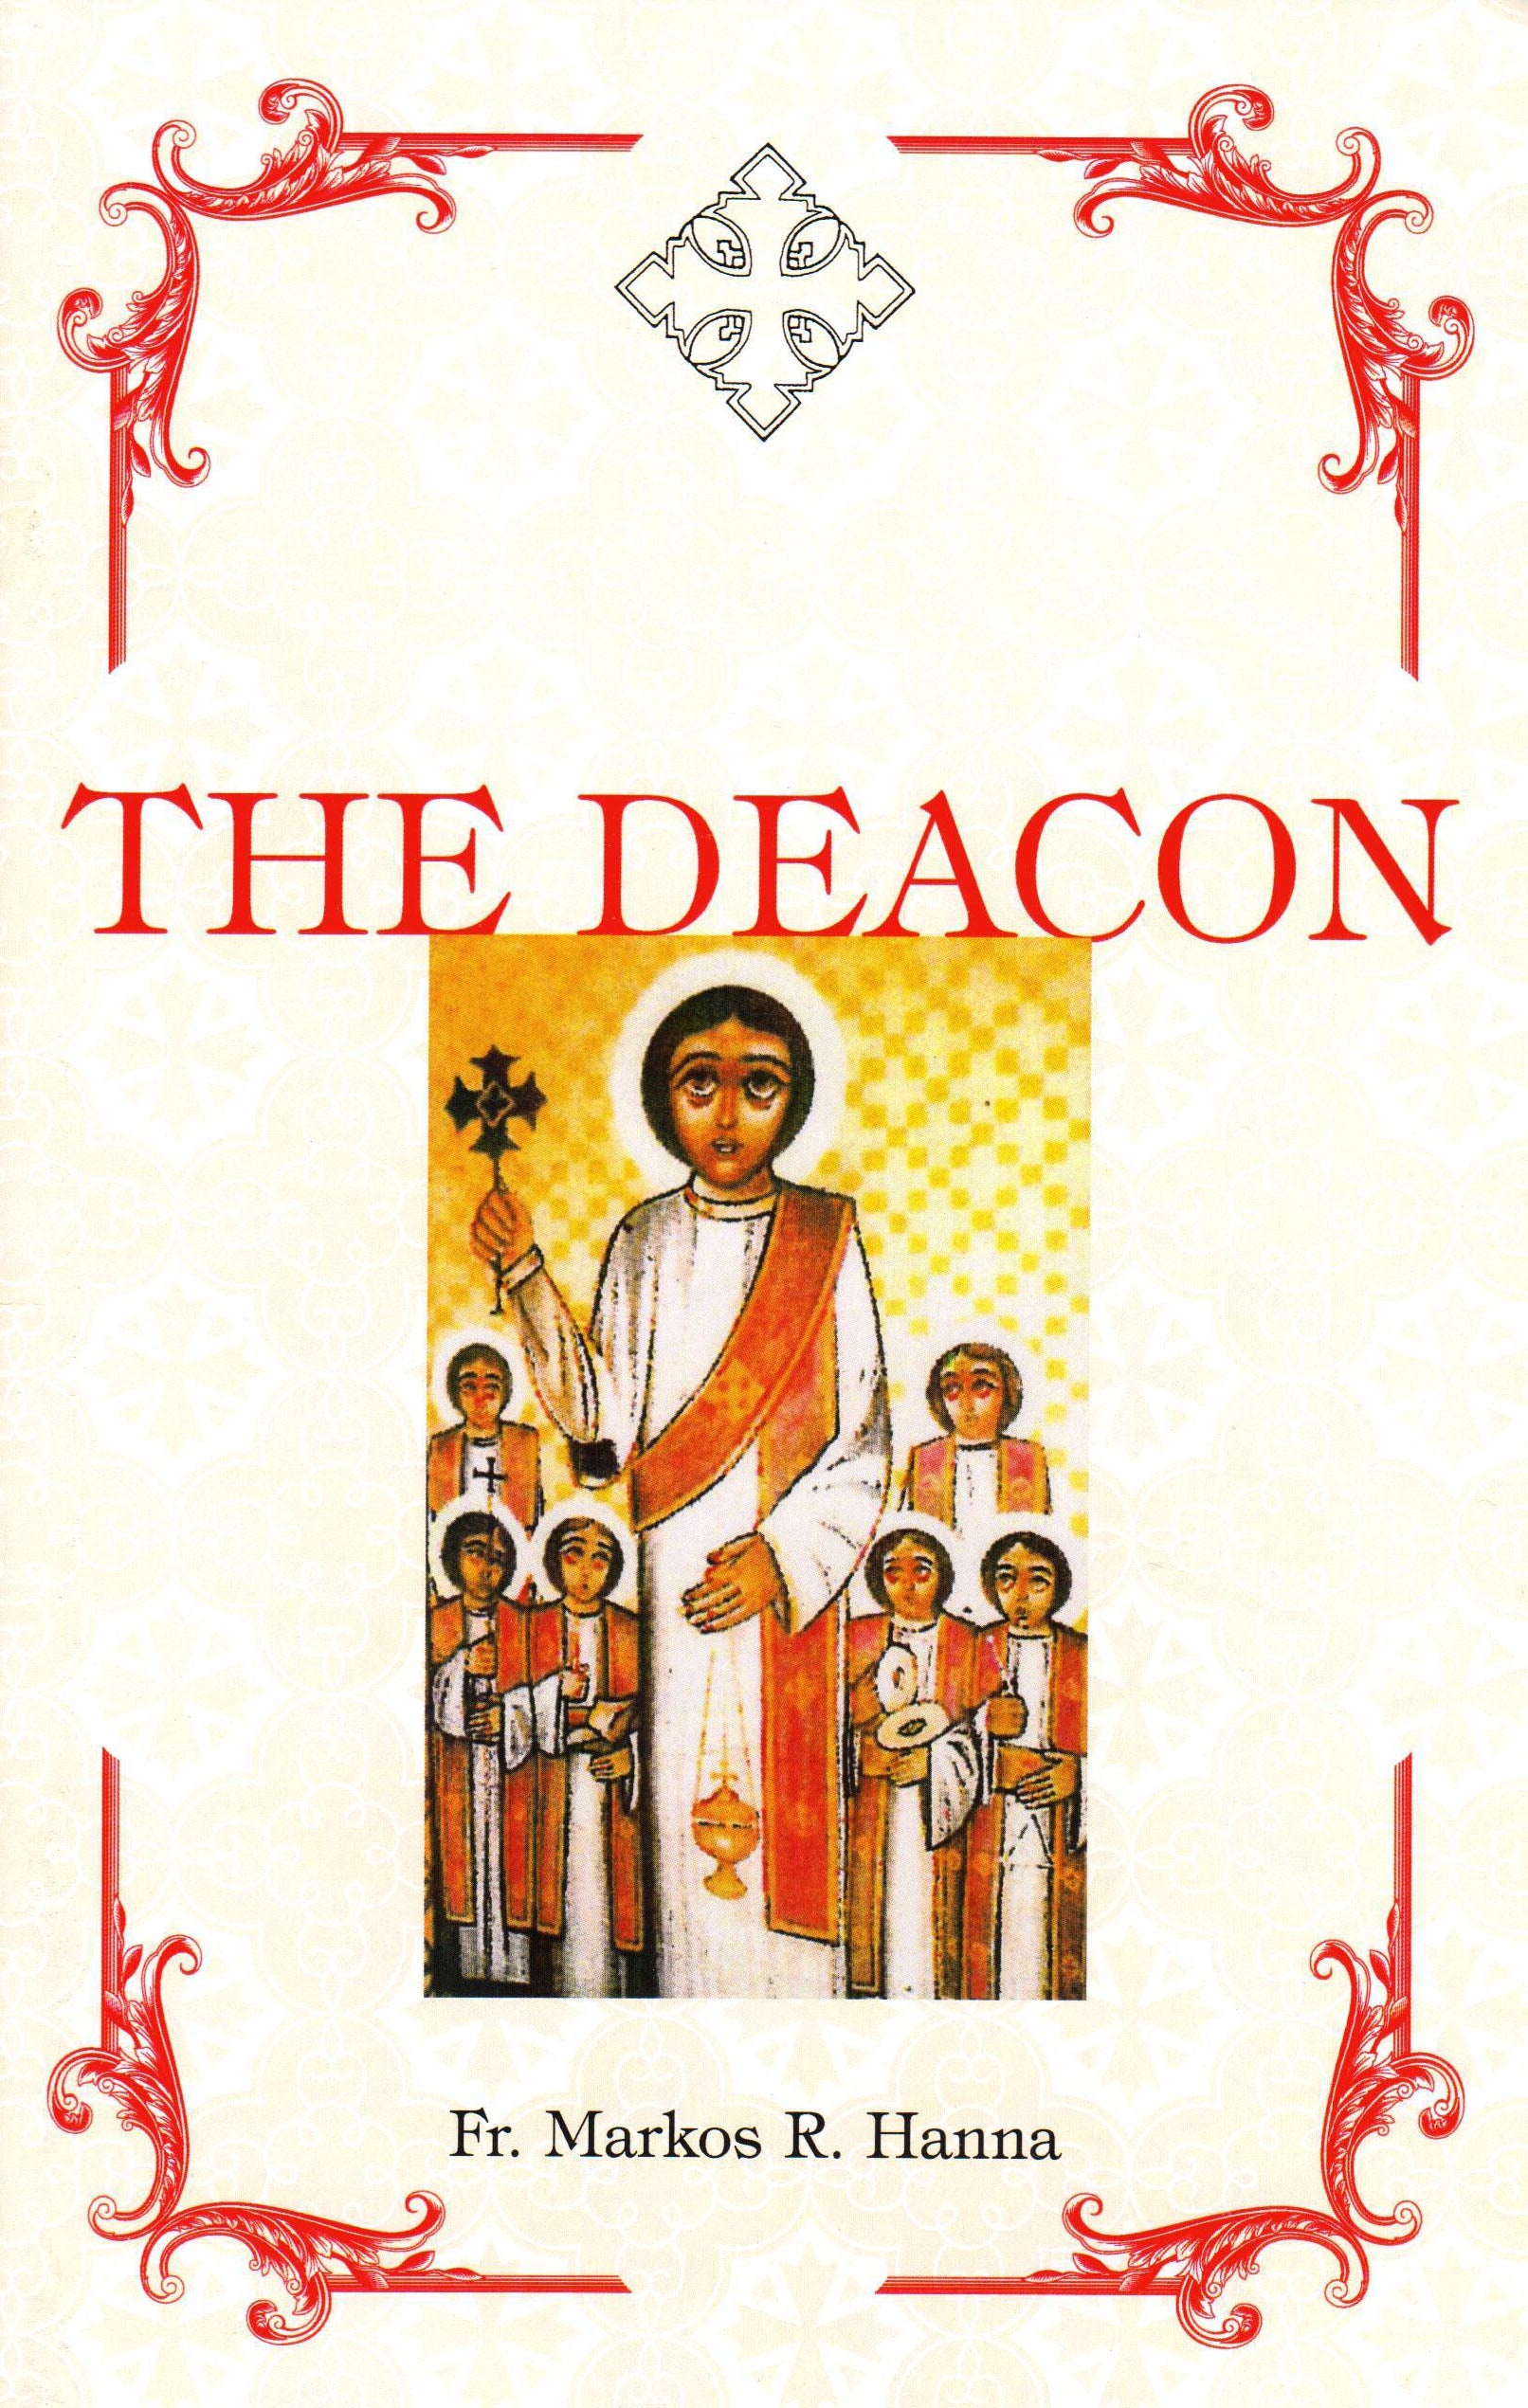 The Deacon